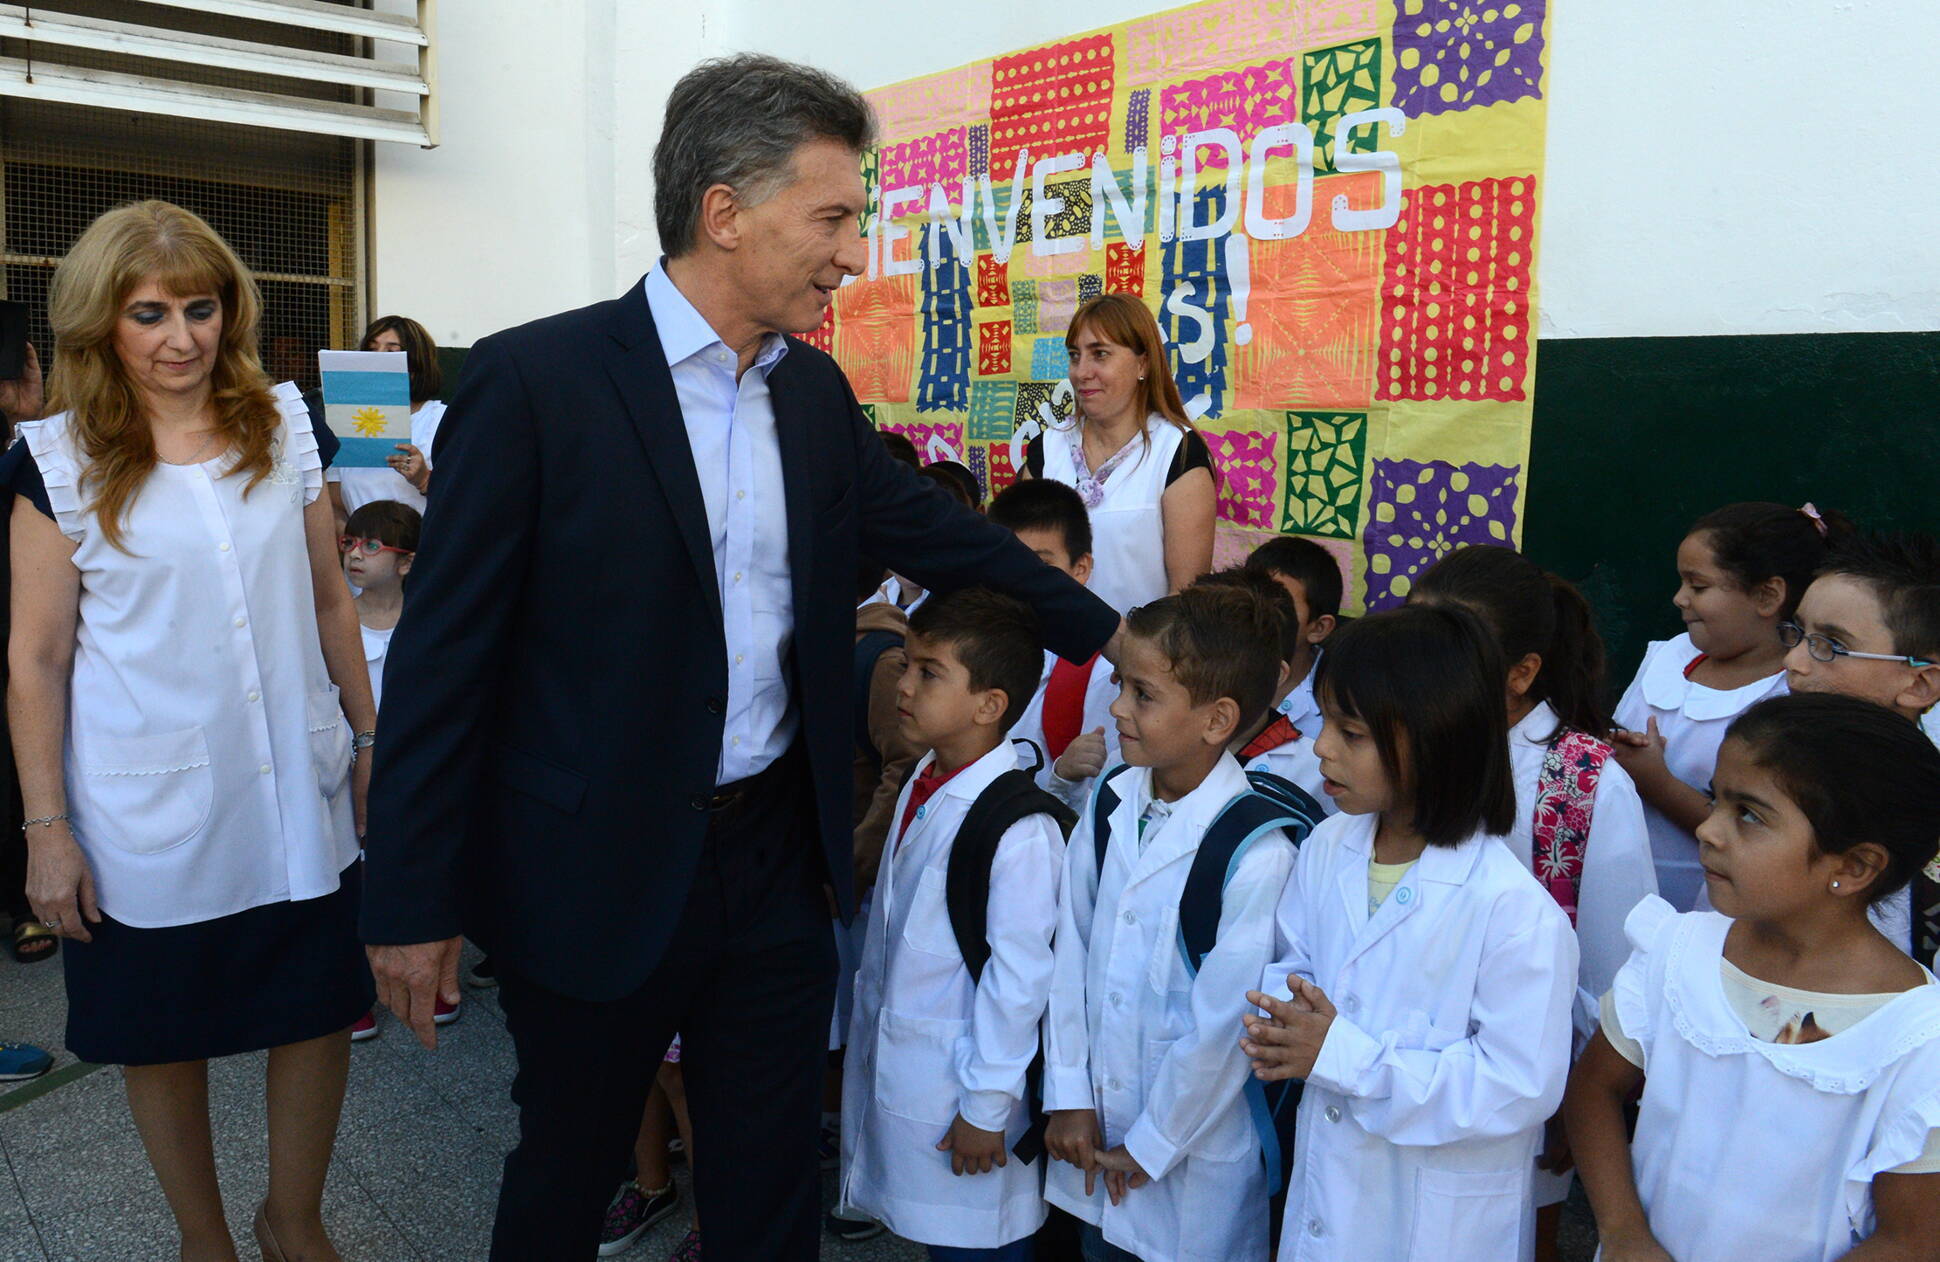  El presidente inauguró el ciclo lectivo 2016, en una escuela del partido de Lanús